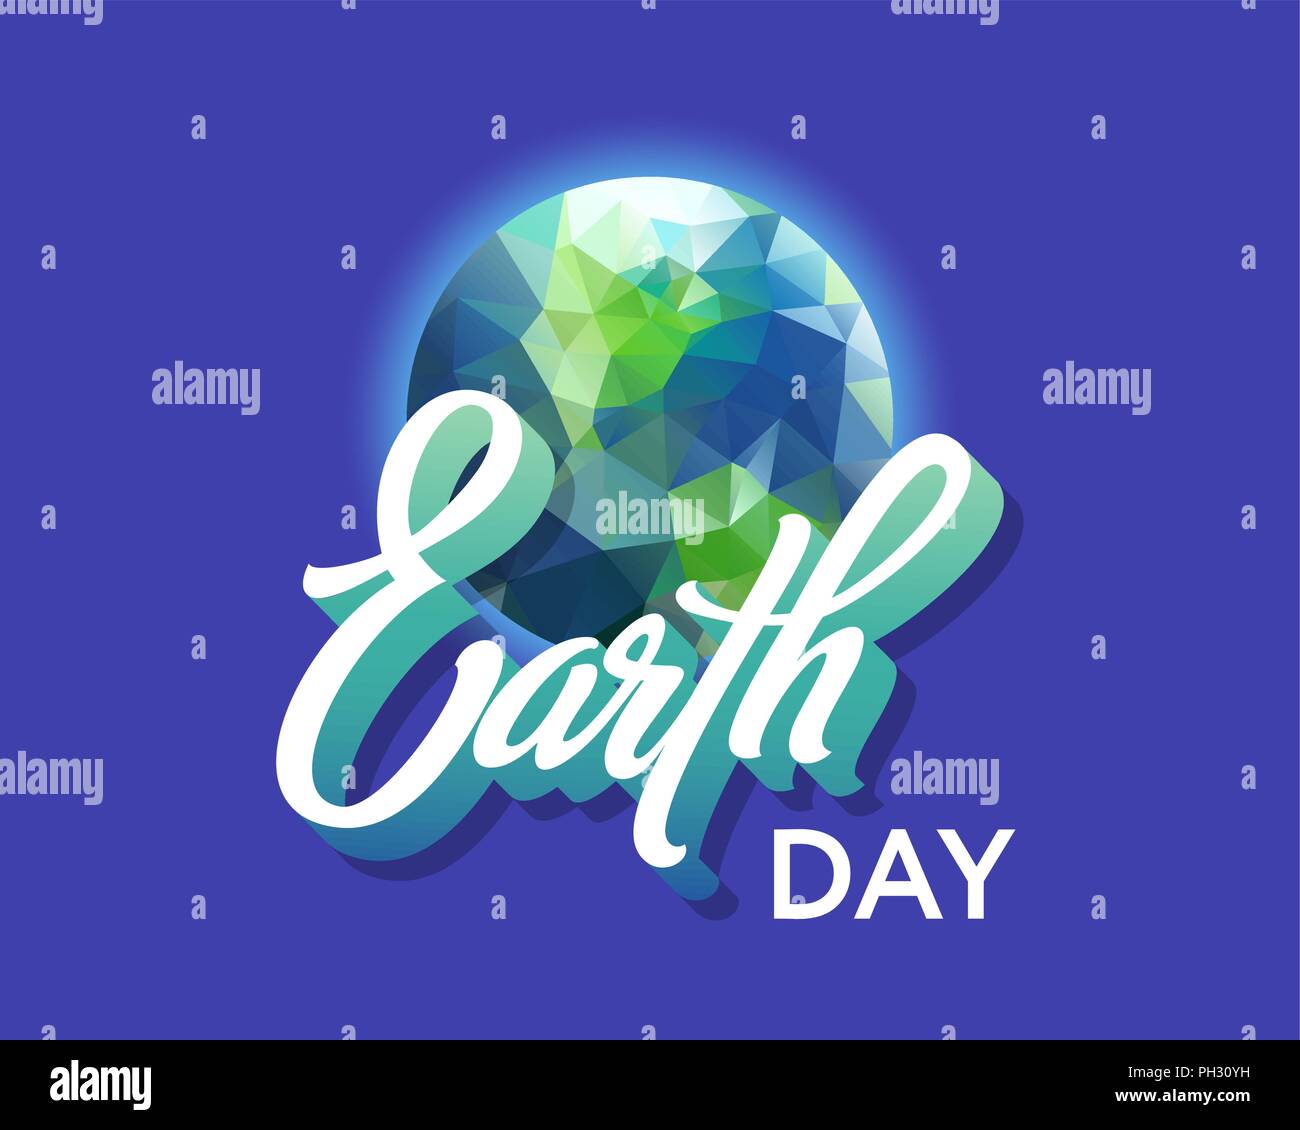 Le jour de la terre. Vector illustration avec texte manuscrit sur fond bleu turquoise Illustration de Vecteur